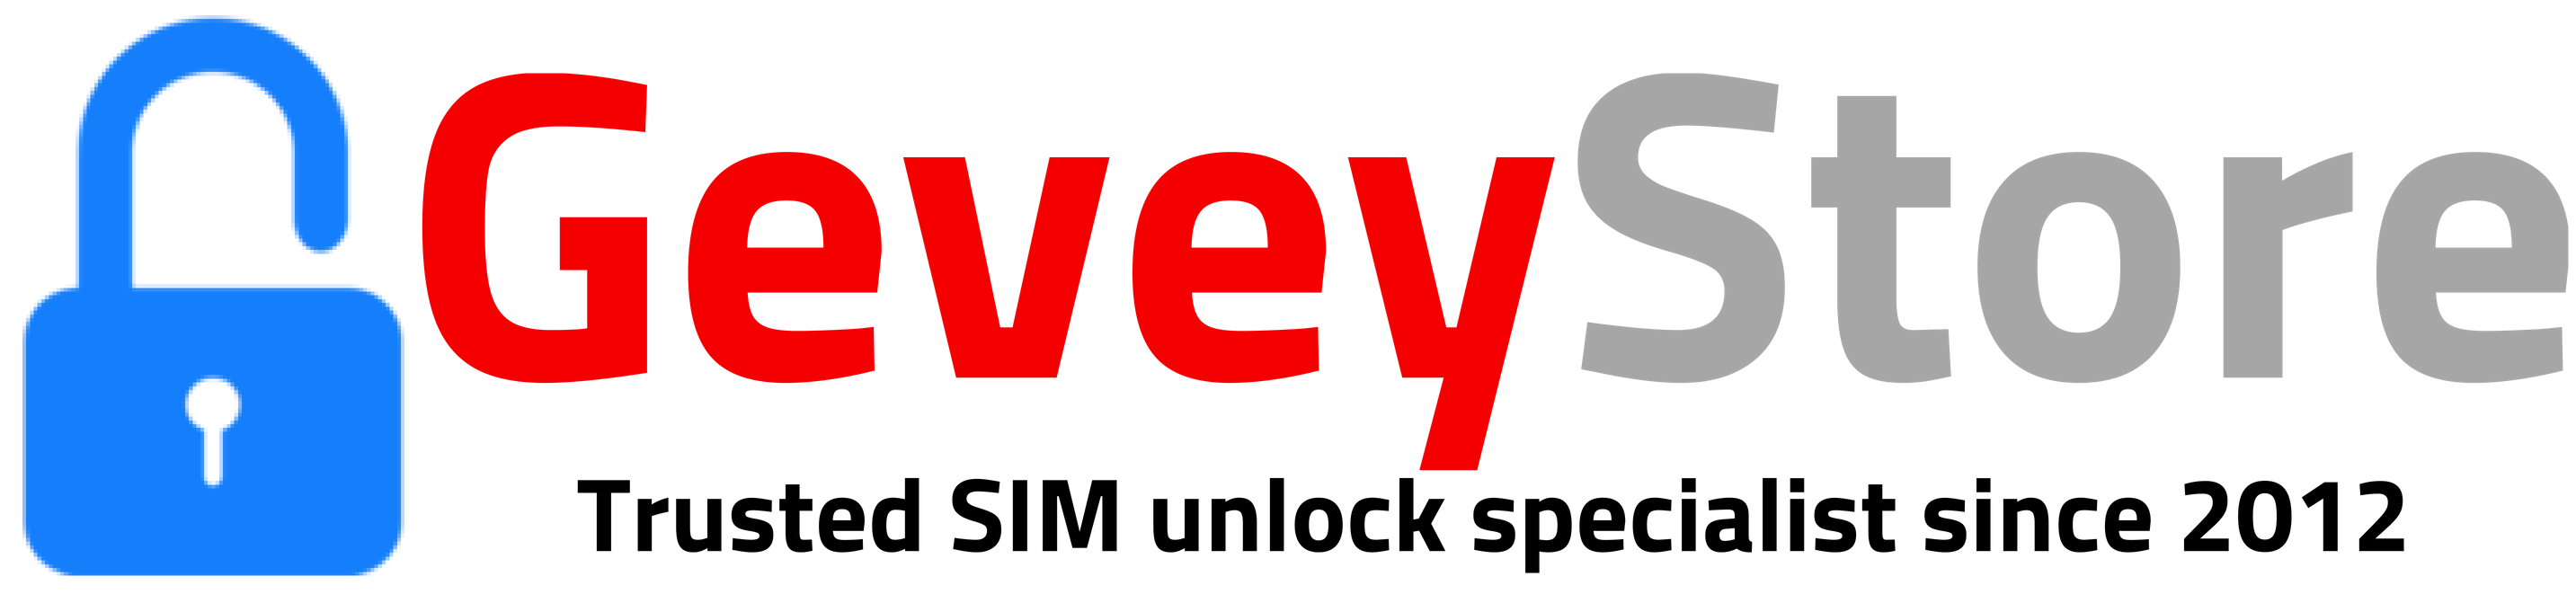 GeveyStore